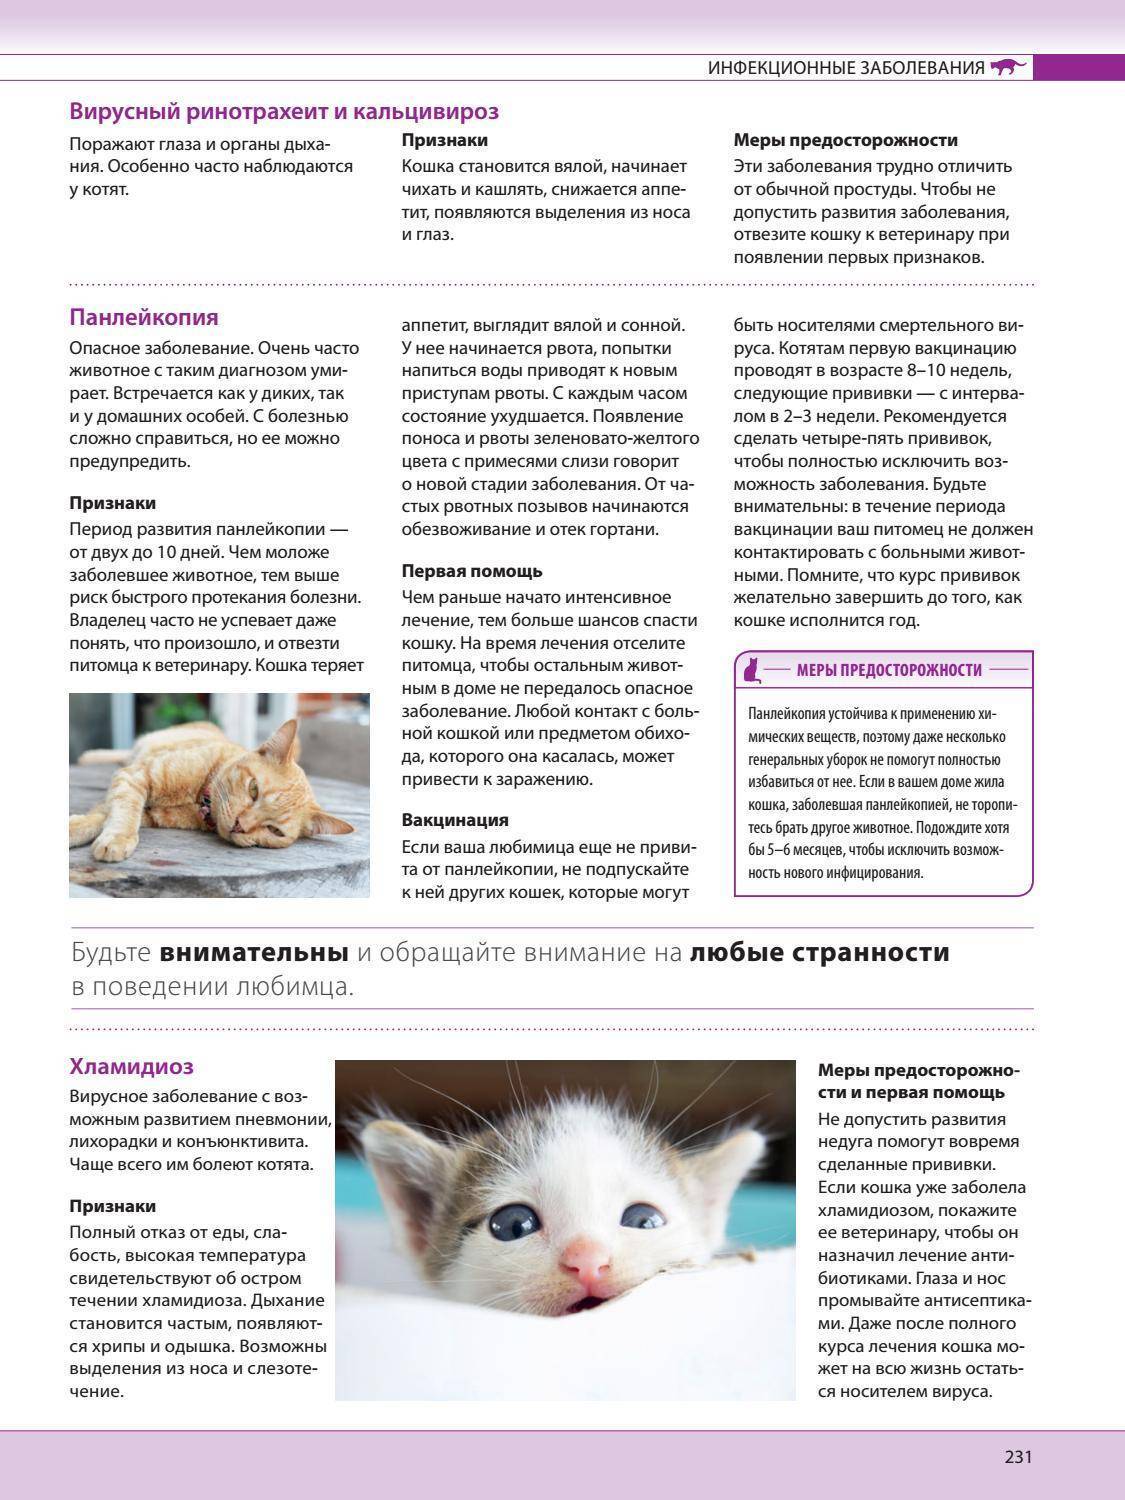 Инсульт у кошек — симптомы, лечение и восстановление после болезни